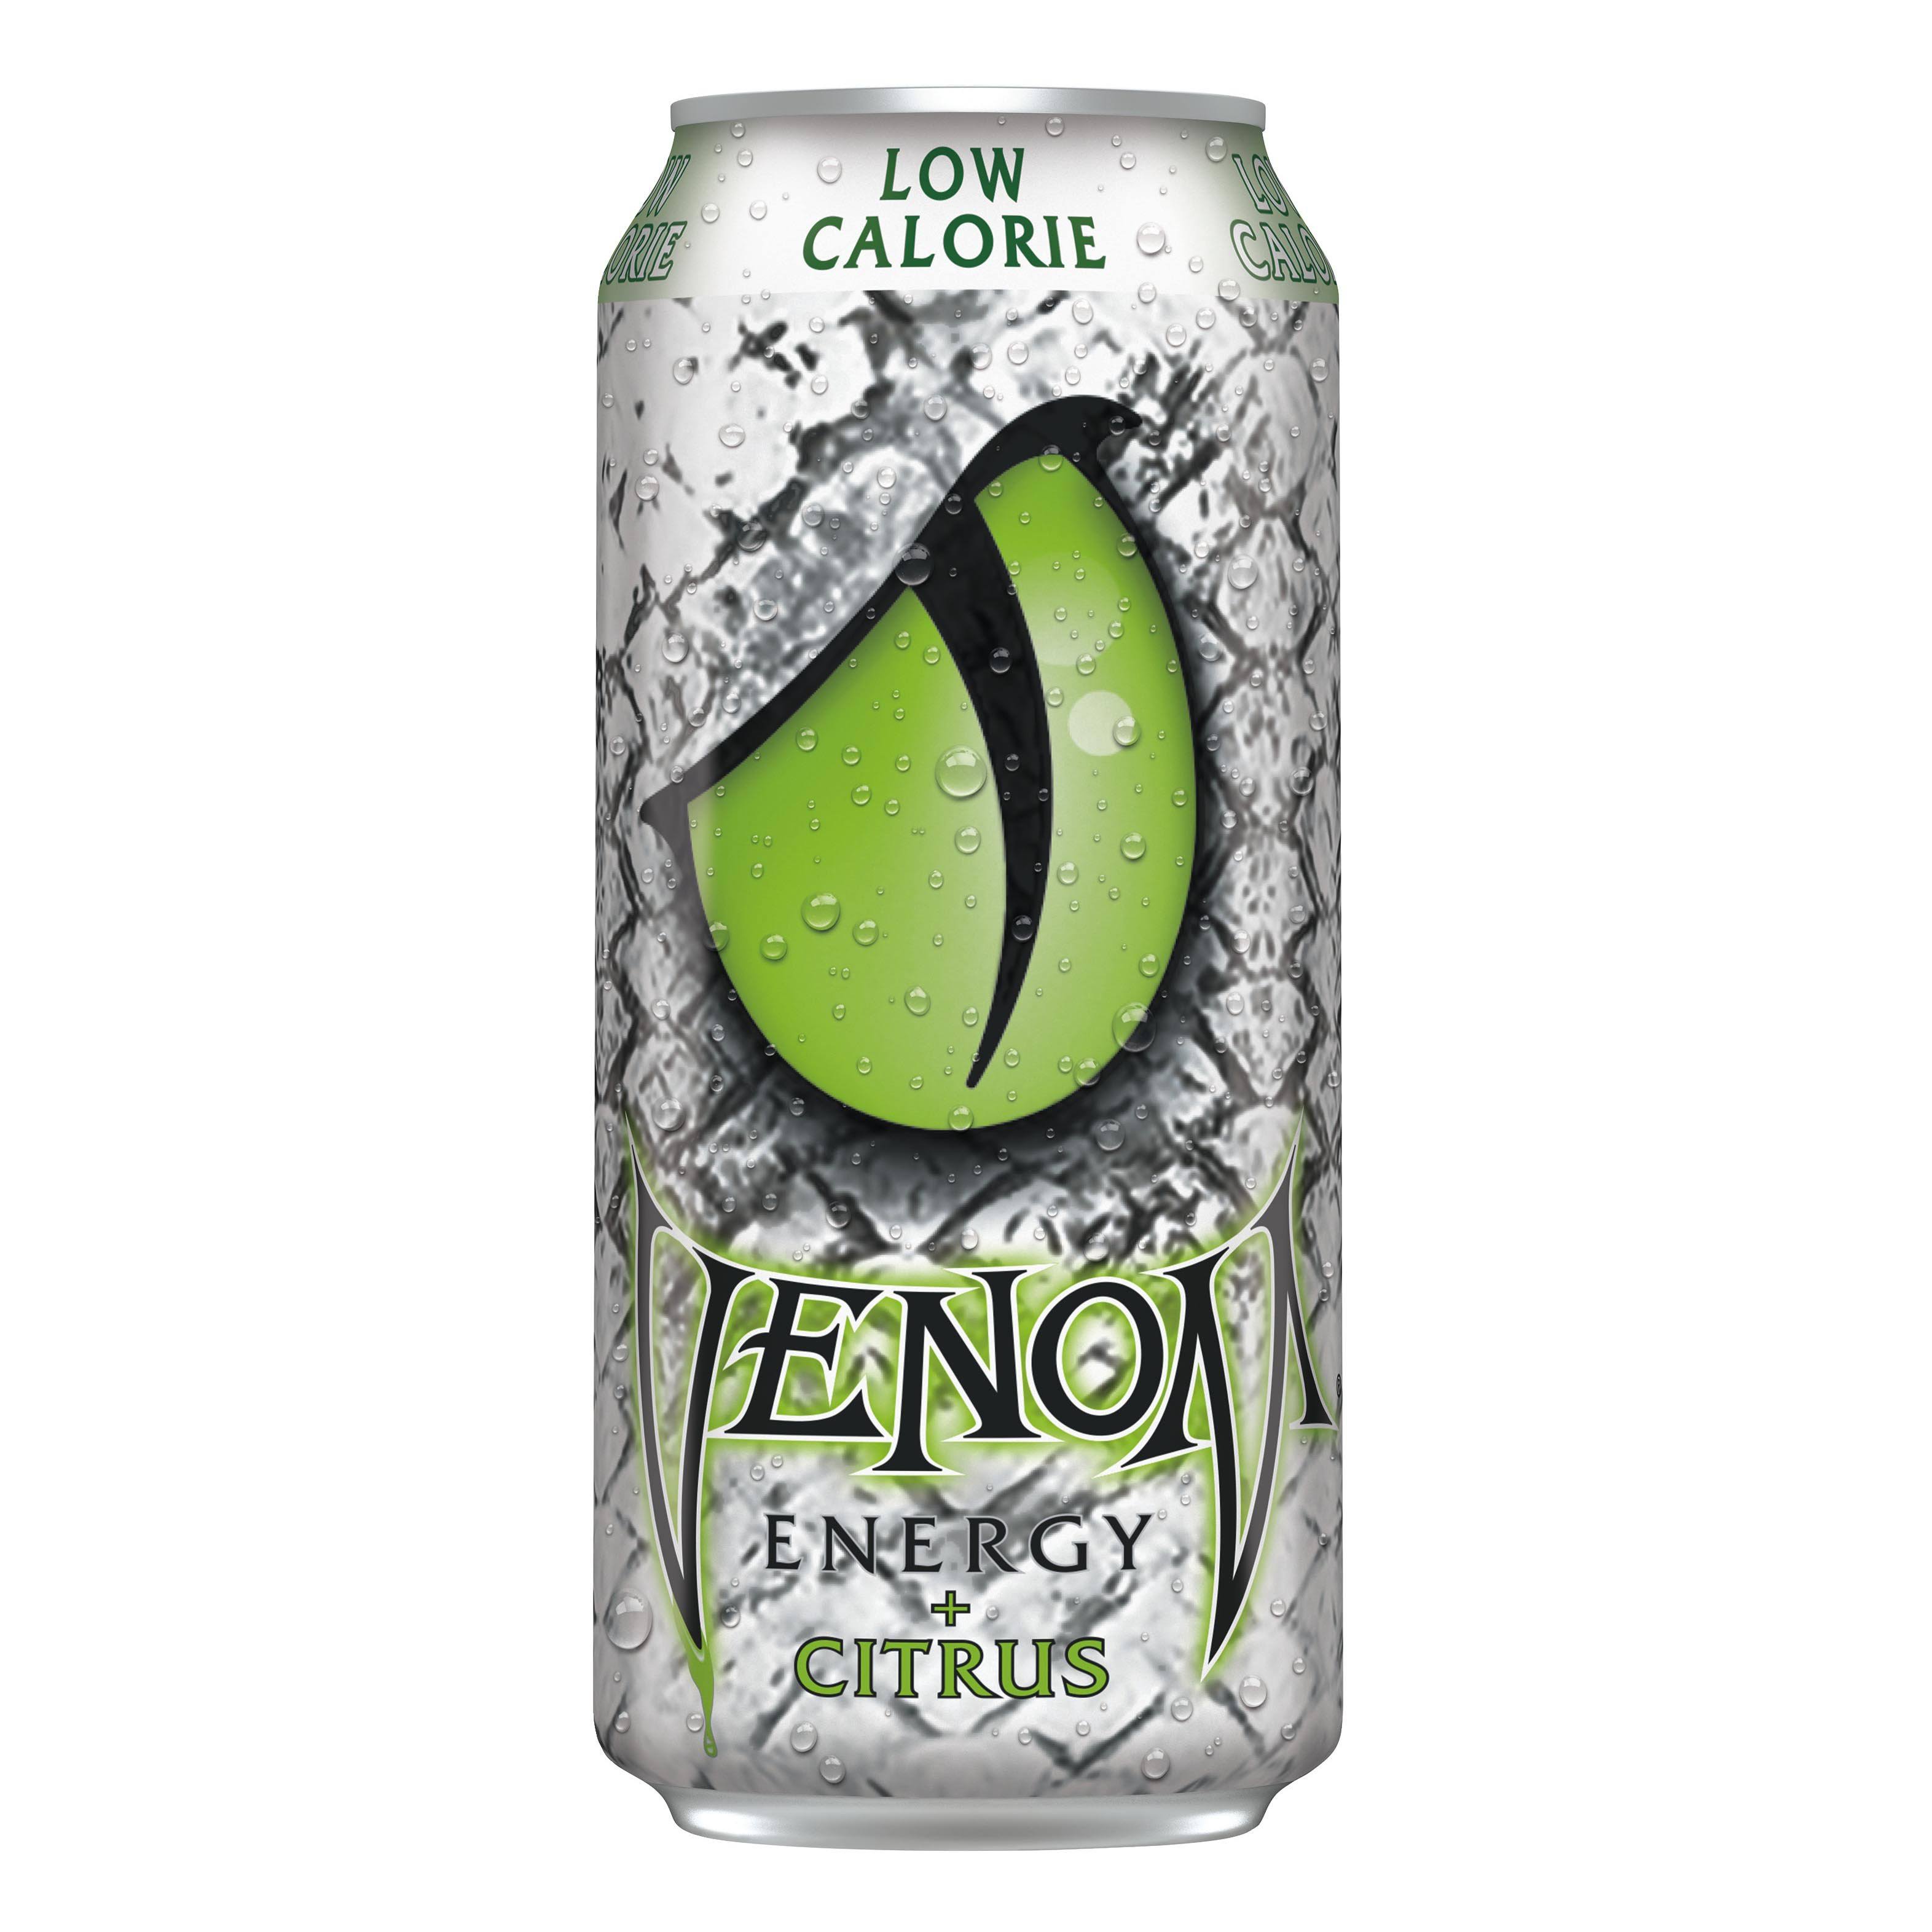 Venom Energy - Low Calorie Citrus - 16 Ounce (Pack of 8)